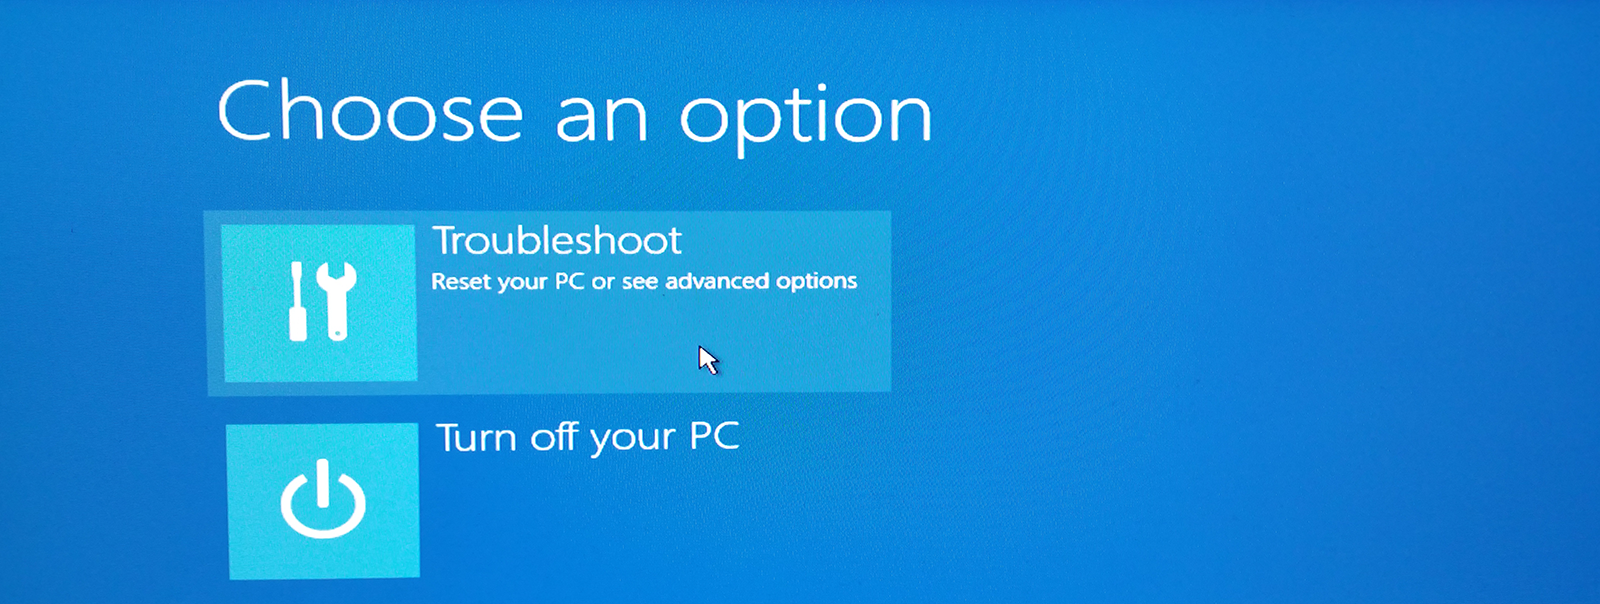 Windows repair: choose an option